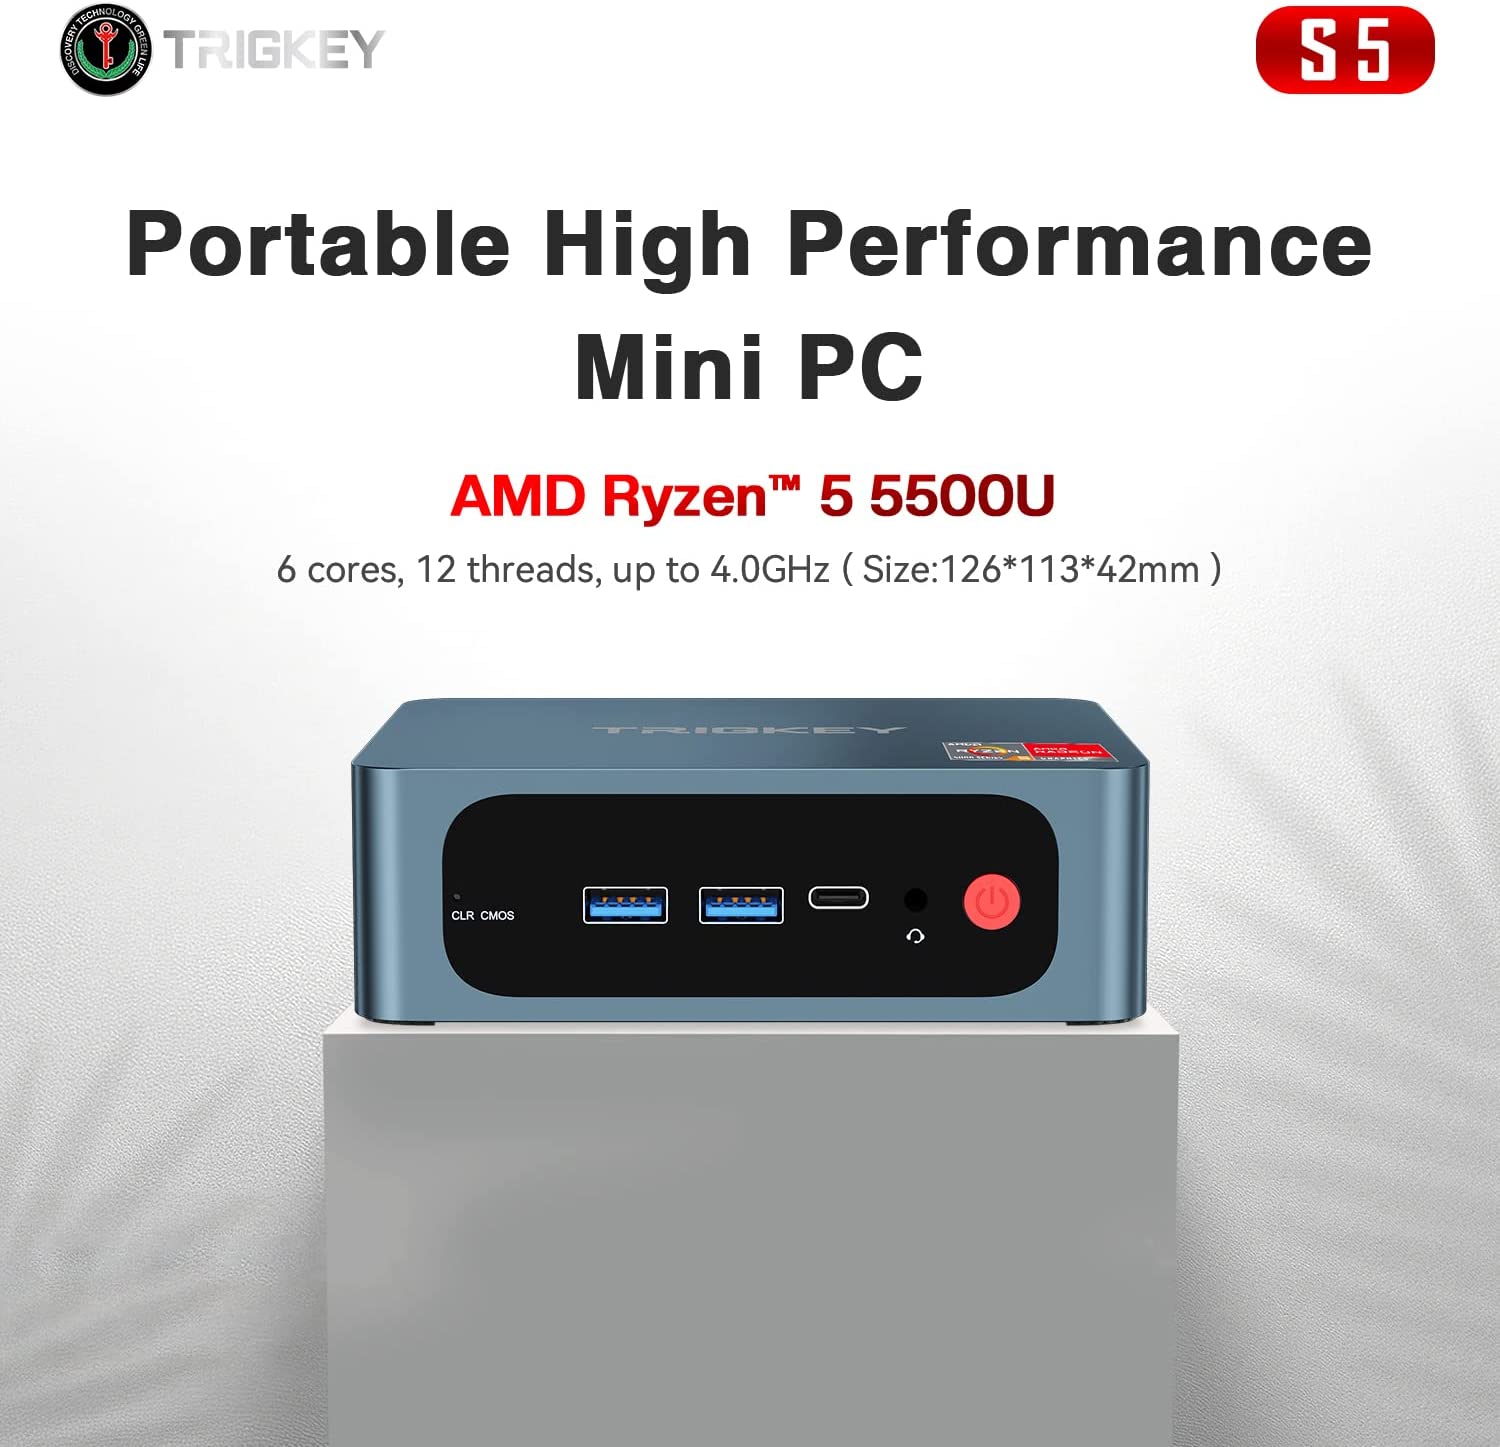 ファッション小物・ストライプストール・ストール・縞模様 AMD ミニPC Ryzen 5500U TRIGKEY Speed S5 通販 